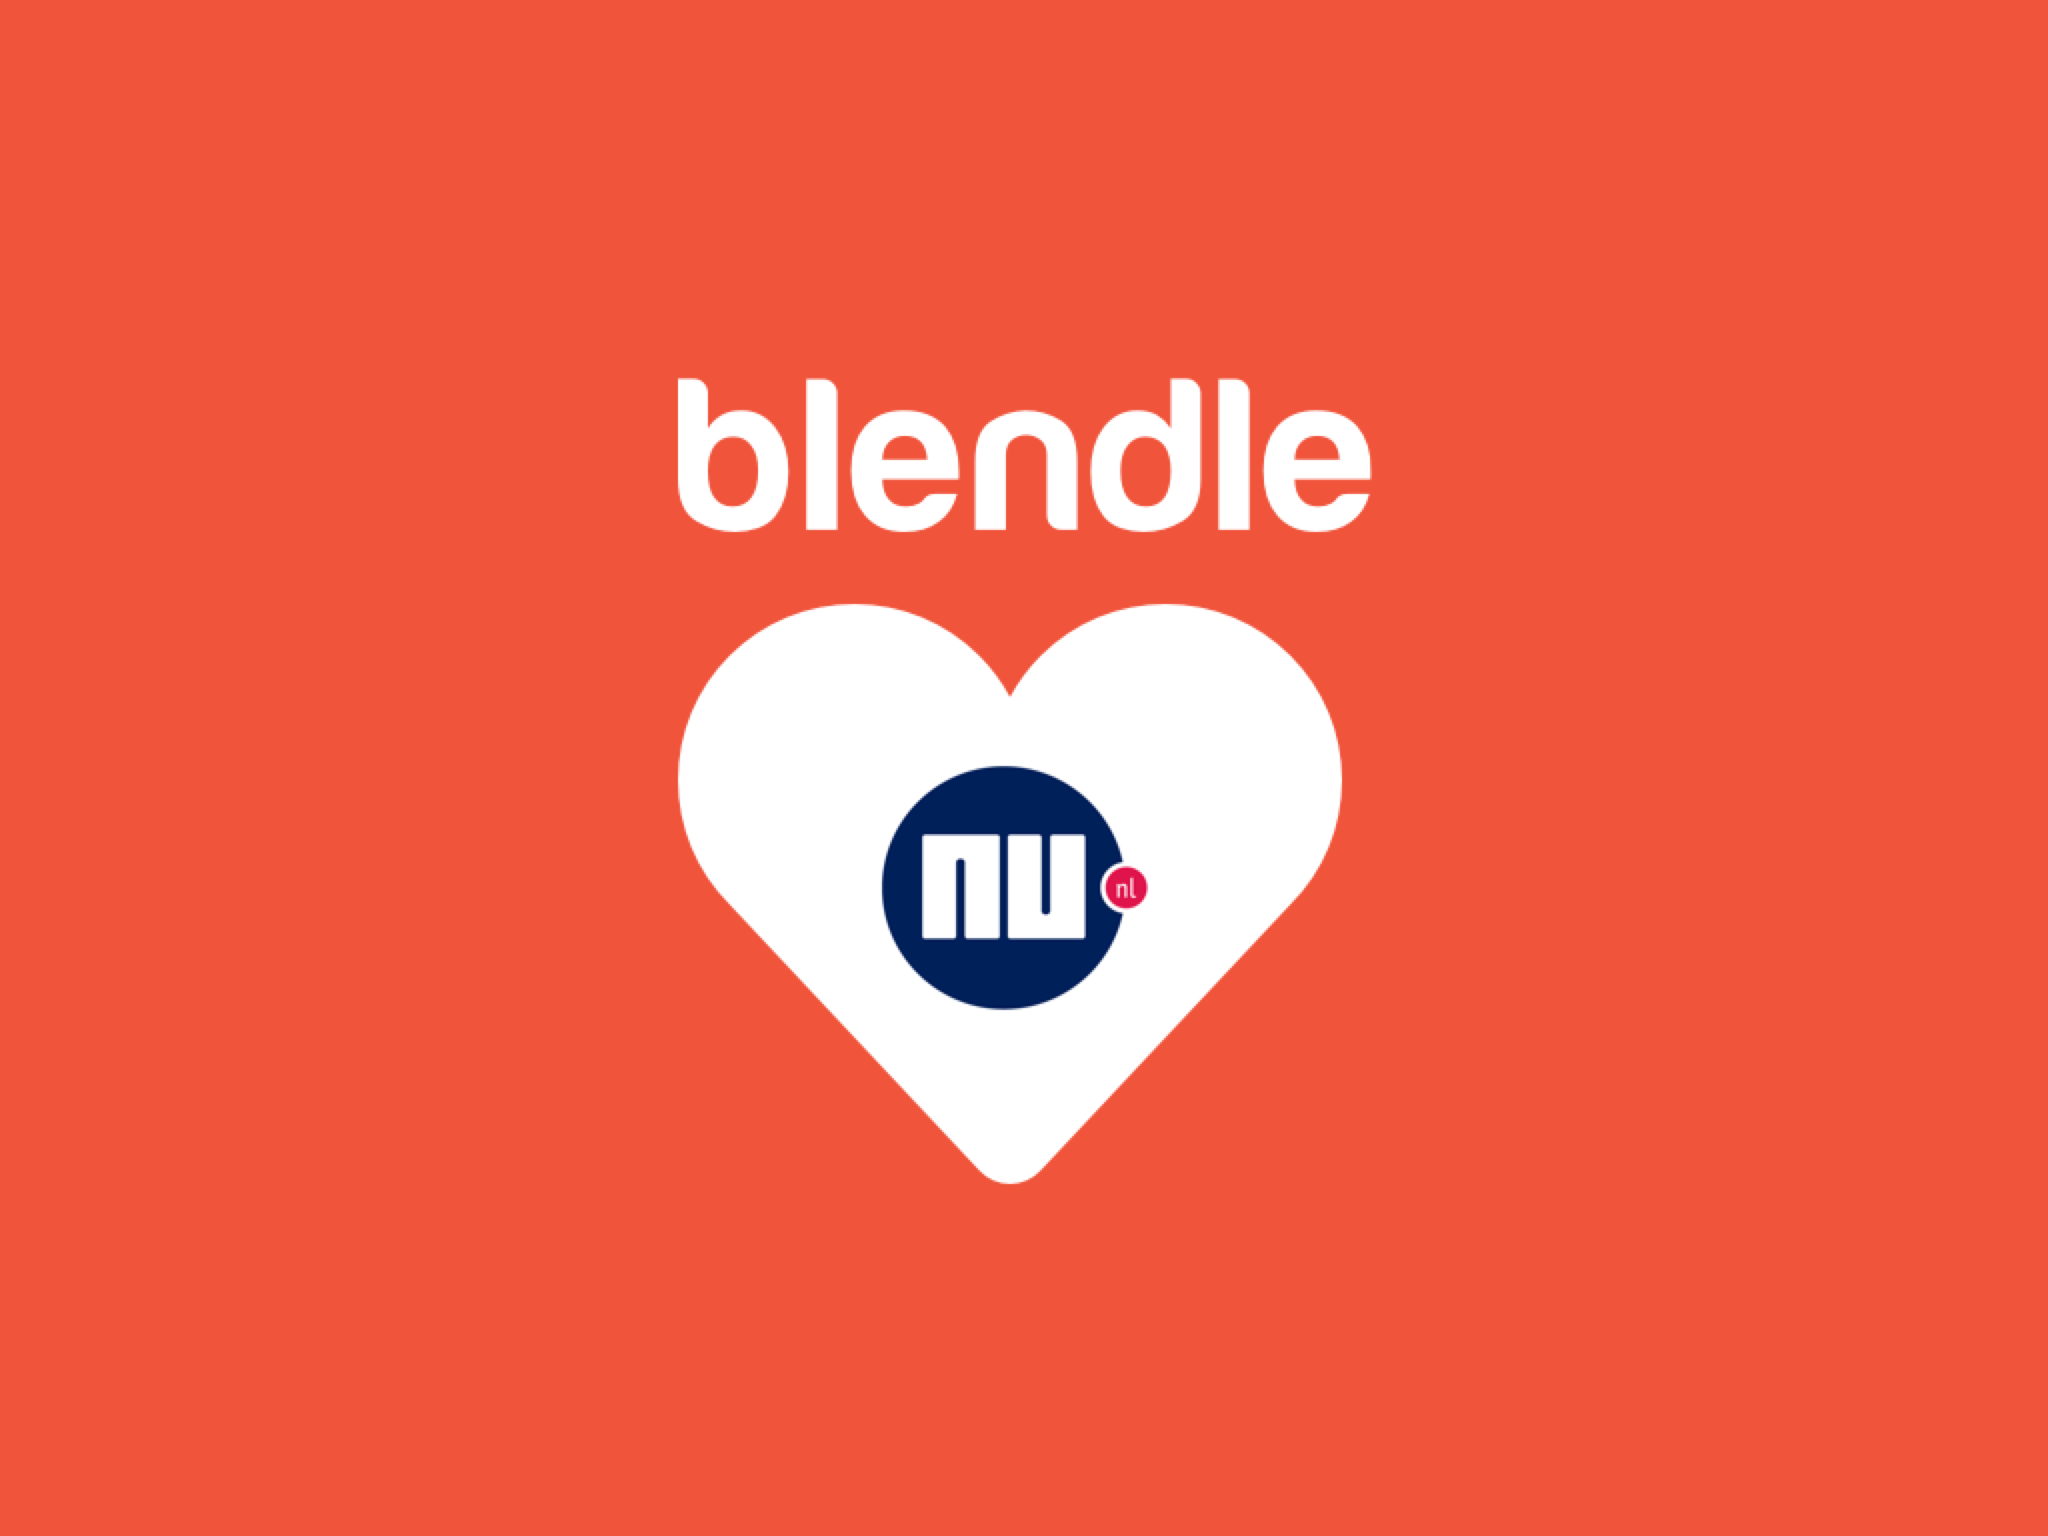 Blendle ❤️ NU.nl